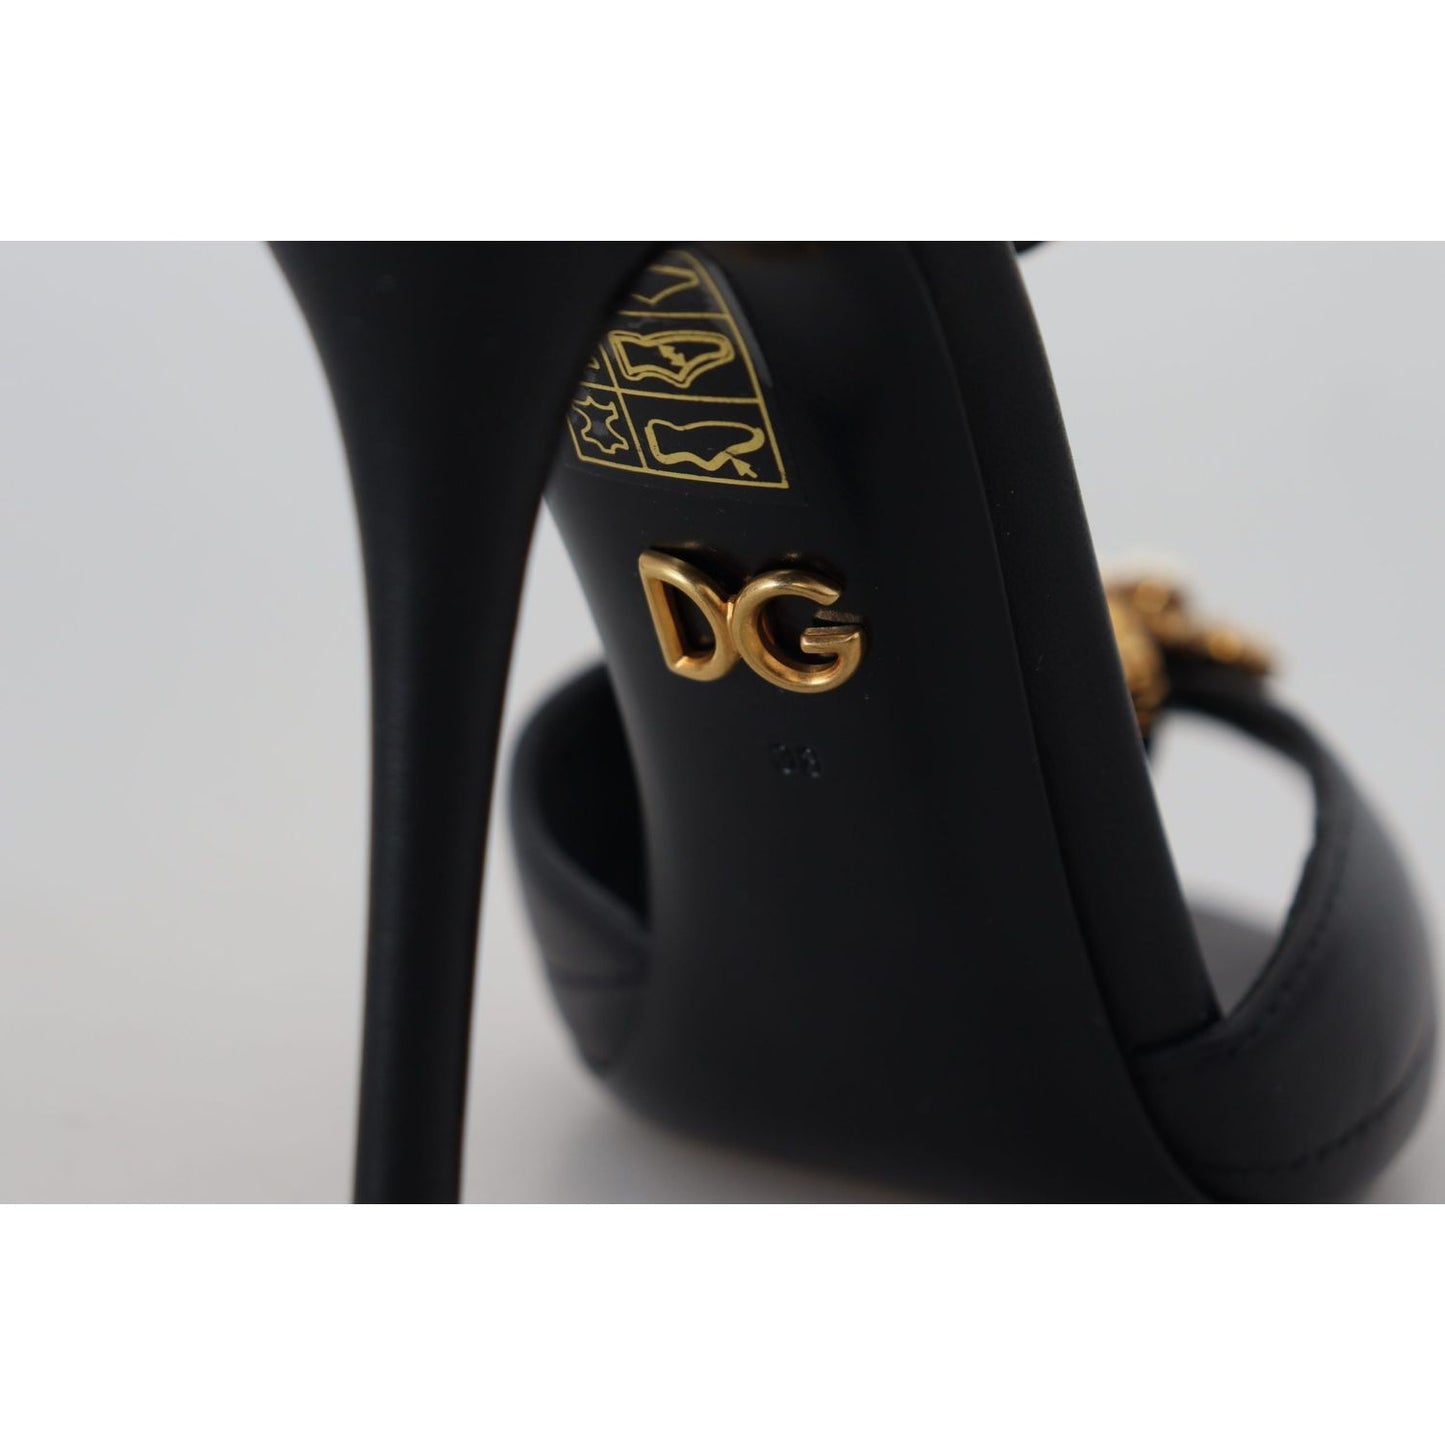 Dolce & GabbanaElegant Gold-Embellished Leather SandalsMcRichard Designer Brands£639.00